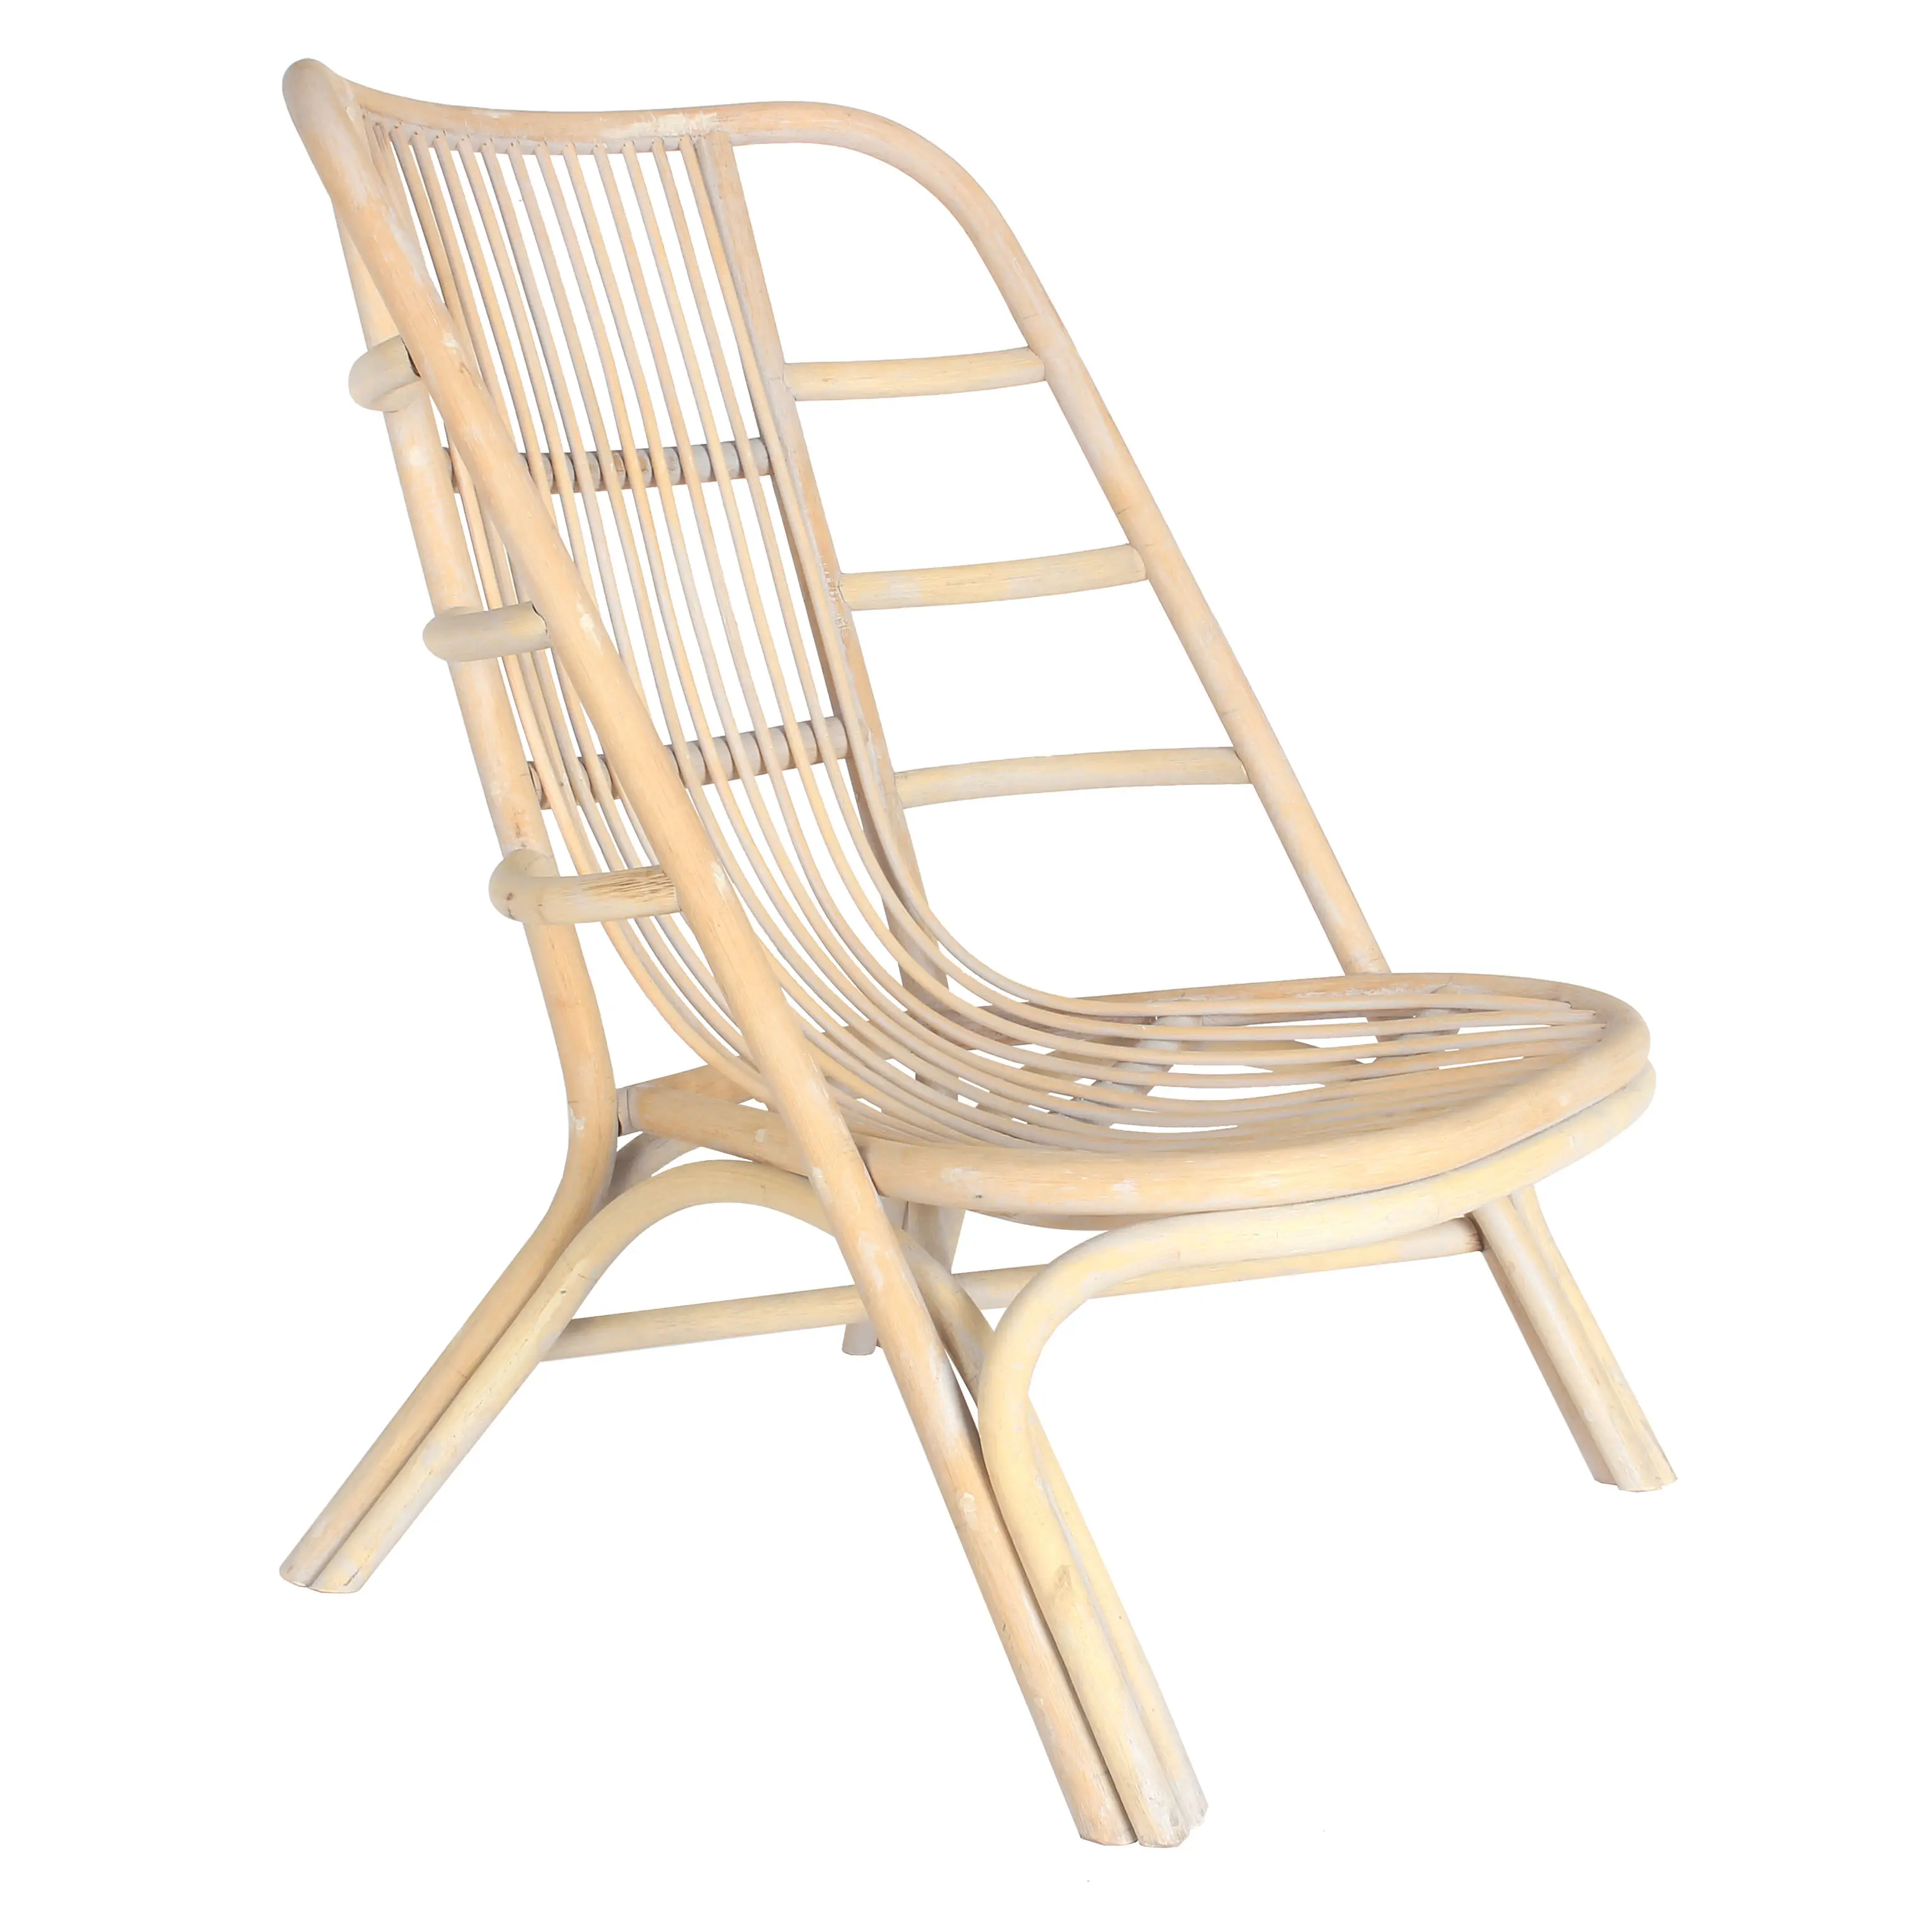 Modern açık Lc4 havuzu mobilya katlanır kanepe sandalye yatak yatak yastık şezlong plaj şezlong